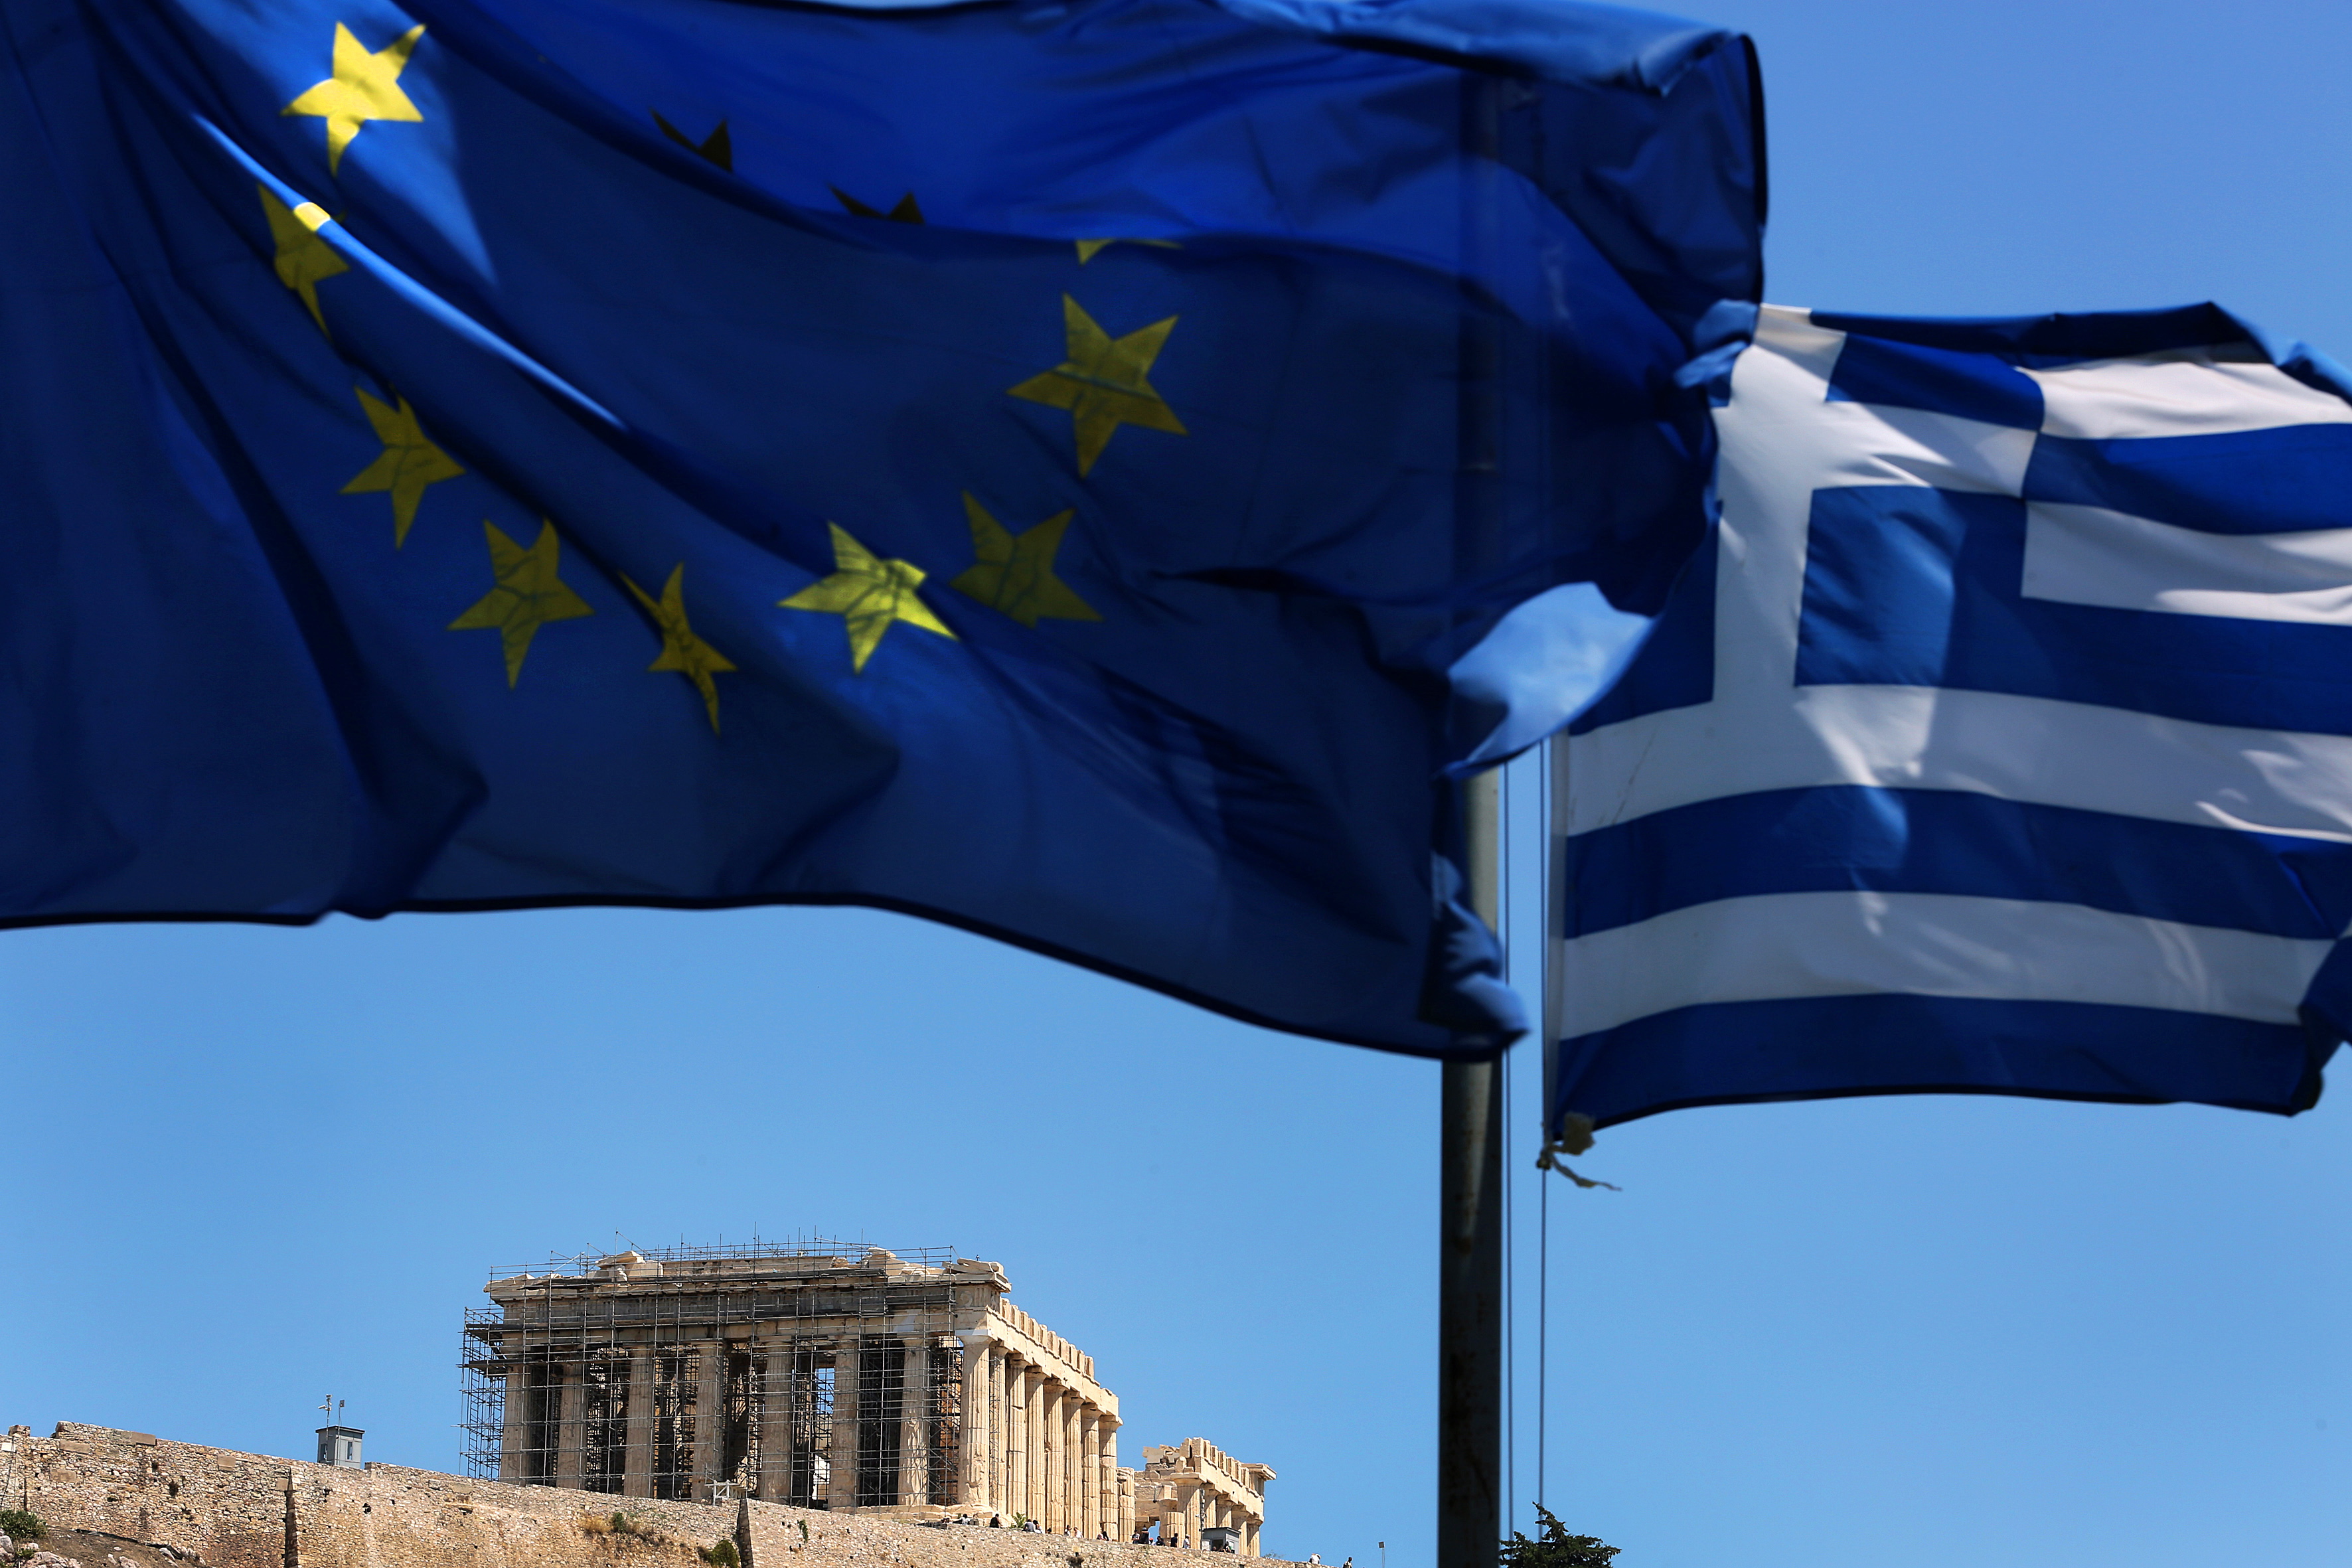 Νέα οικονομική πολιτική με έμπνευση και ρίσκο θέλει η Ελλάδα